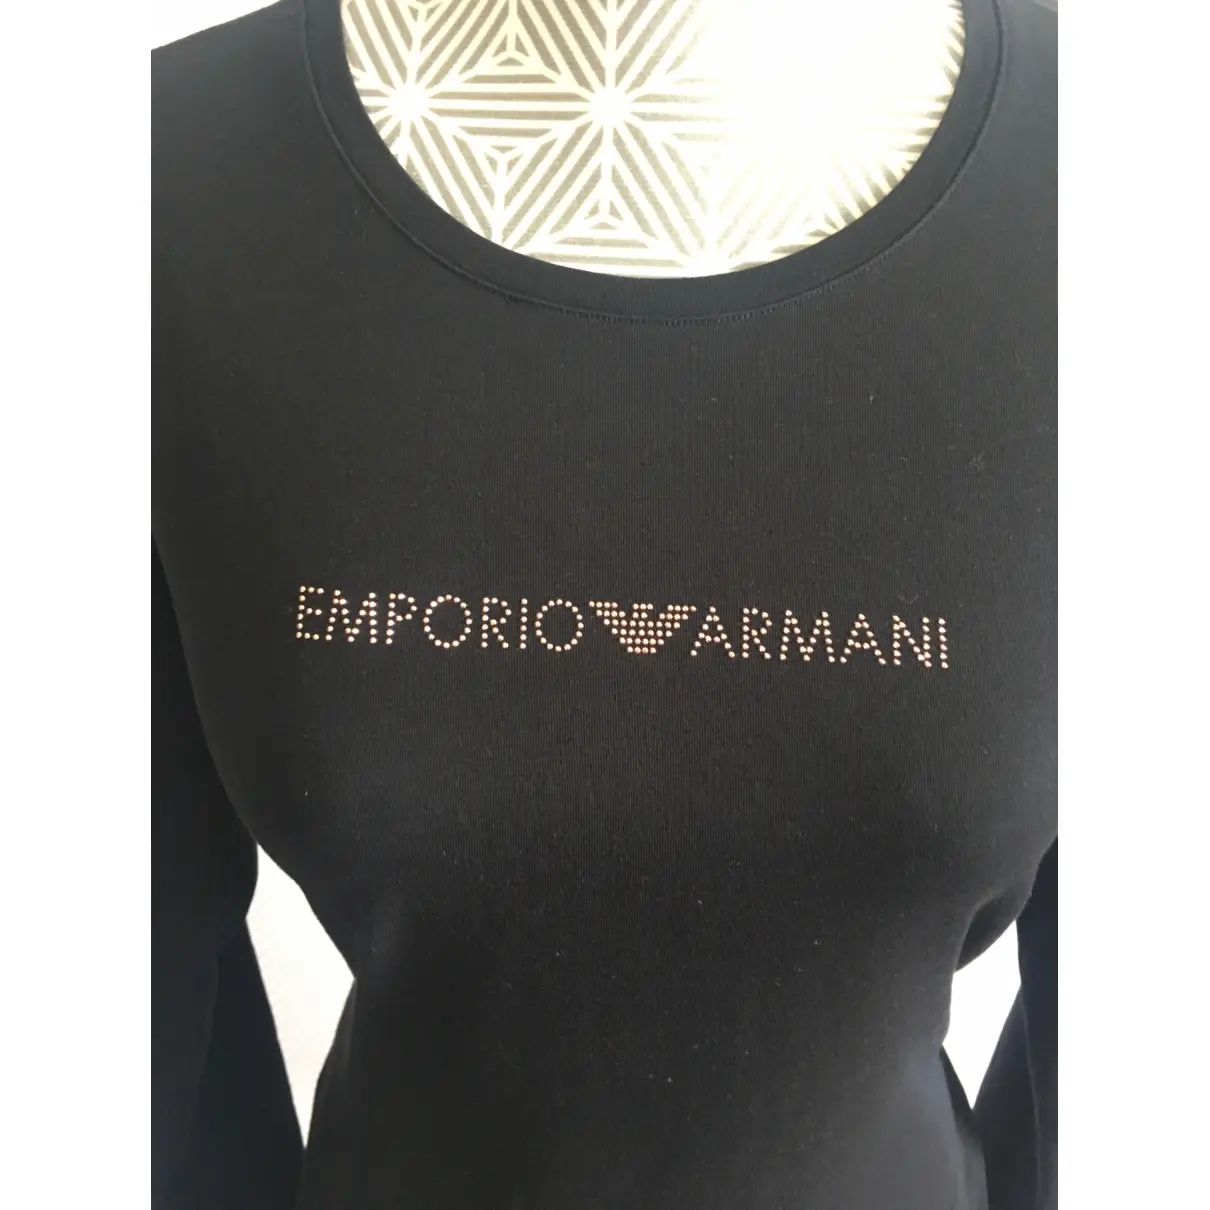 Buy Emporio Armani Knitwear online